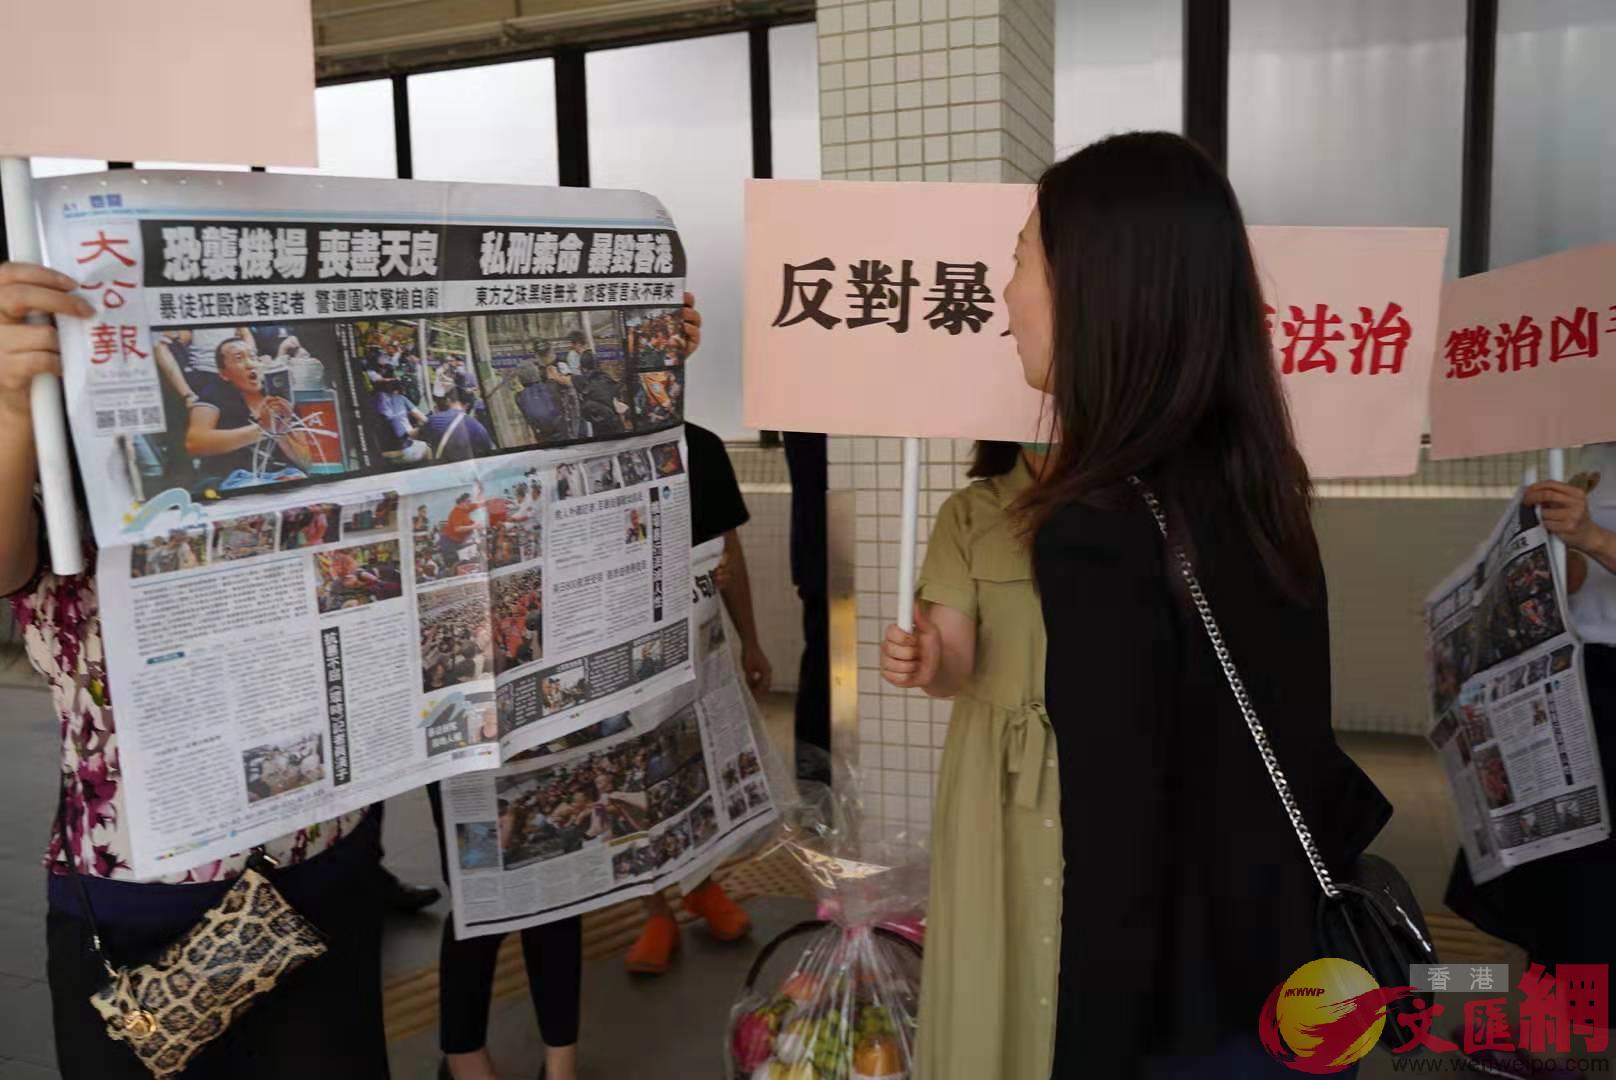 市民手持大公報B香港文匯報及反對暴力標語A聲援付國豪